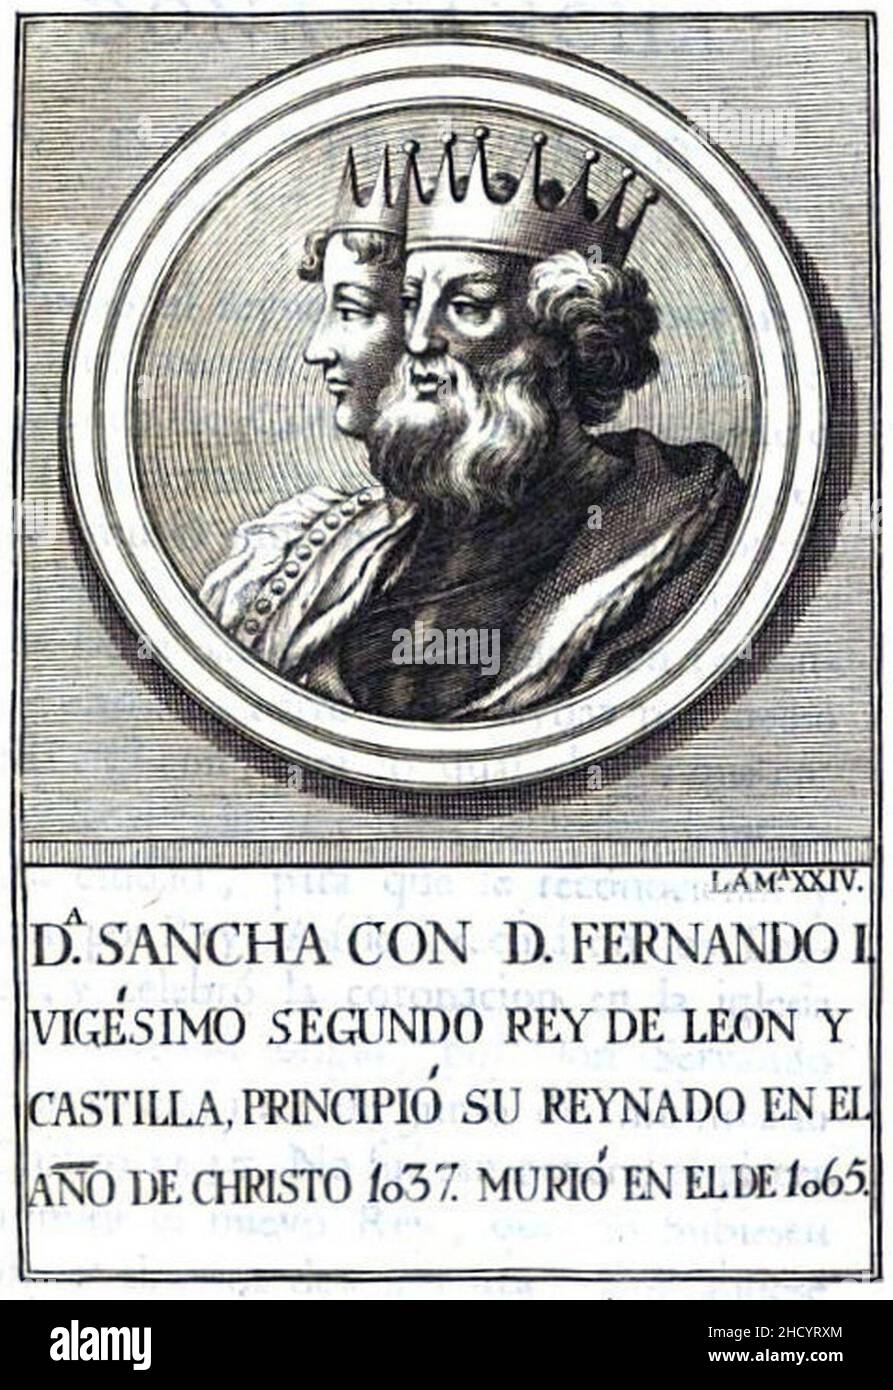 Retrato-182-Rey de León-Fernando I. Stock Photo